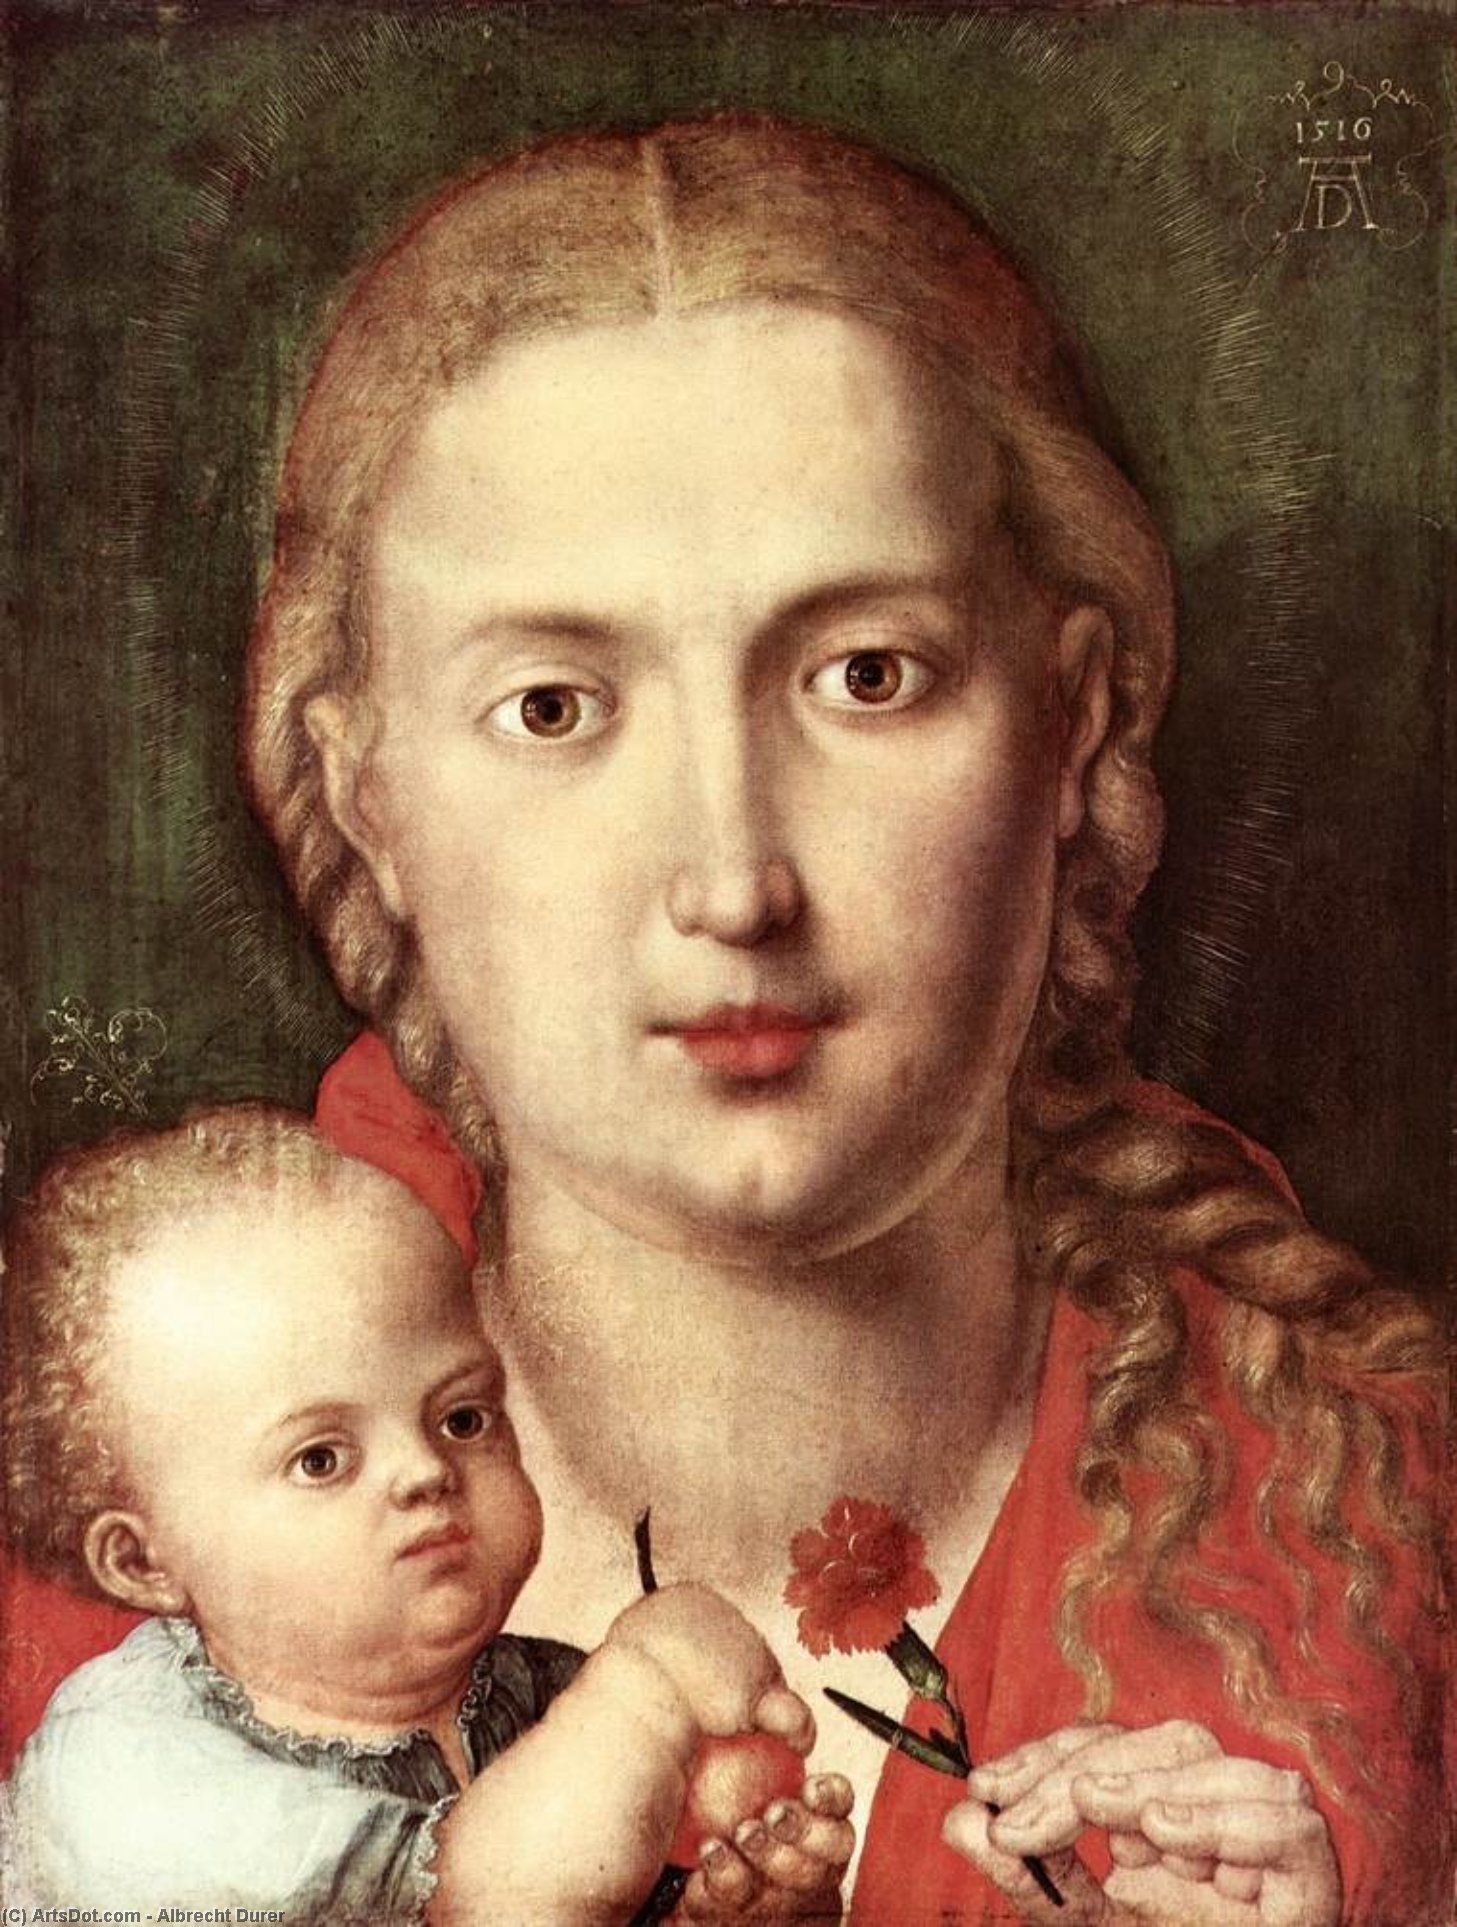 WikiOO.org - אנציקלופדיה לאמנויות יפות - ציור, יצירות אמנות Albrecht Durer - The Madonna of the Carnation